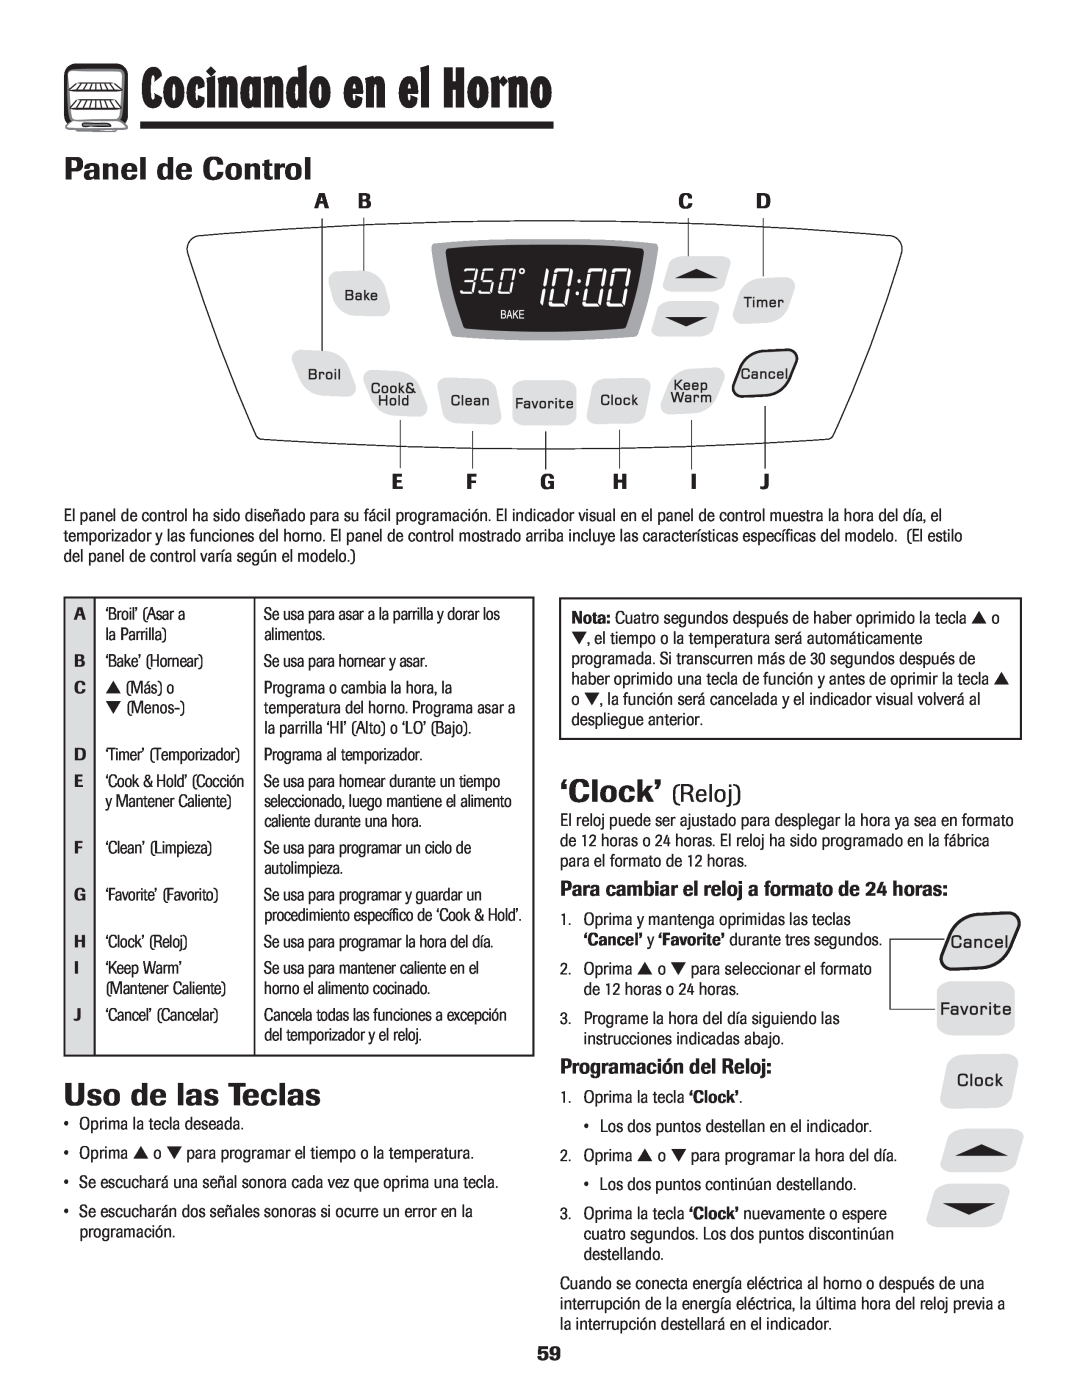 Amana 8113P598-60 manual Cocinando en el Horno, Panel de Control, Uso de las Teclas, ‘Clock’ Reloj, Programación del Reloj 